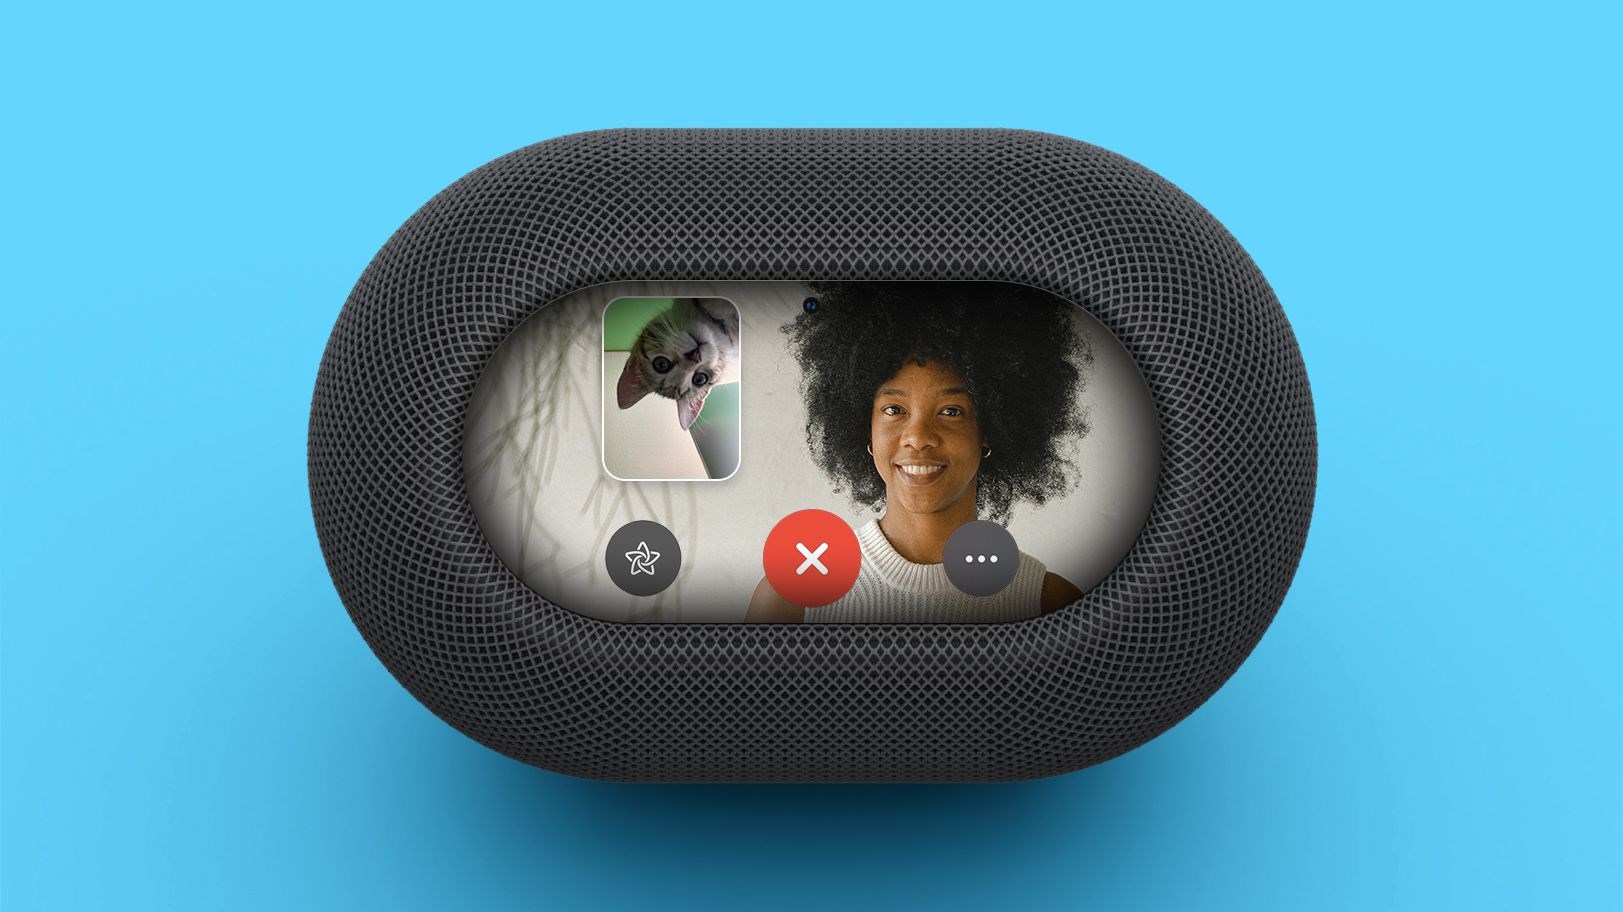 Apple ekran ve kamera ile donatılmış yeni bir HomePod geliştiriyor